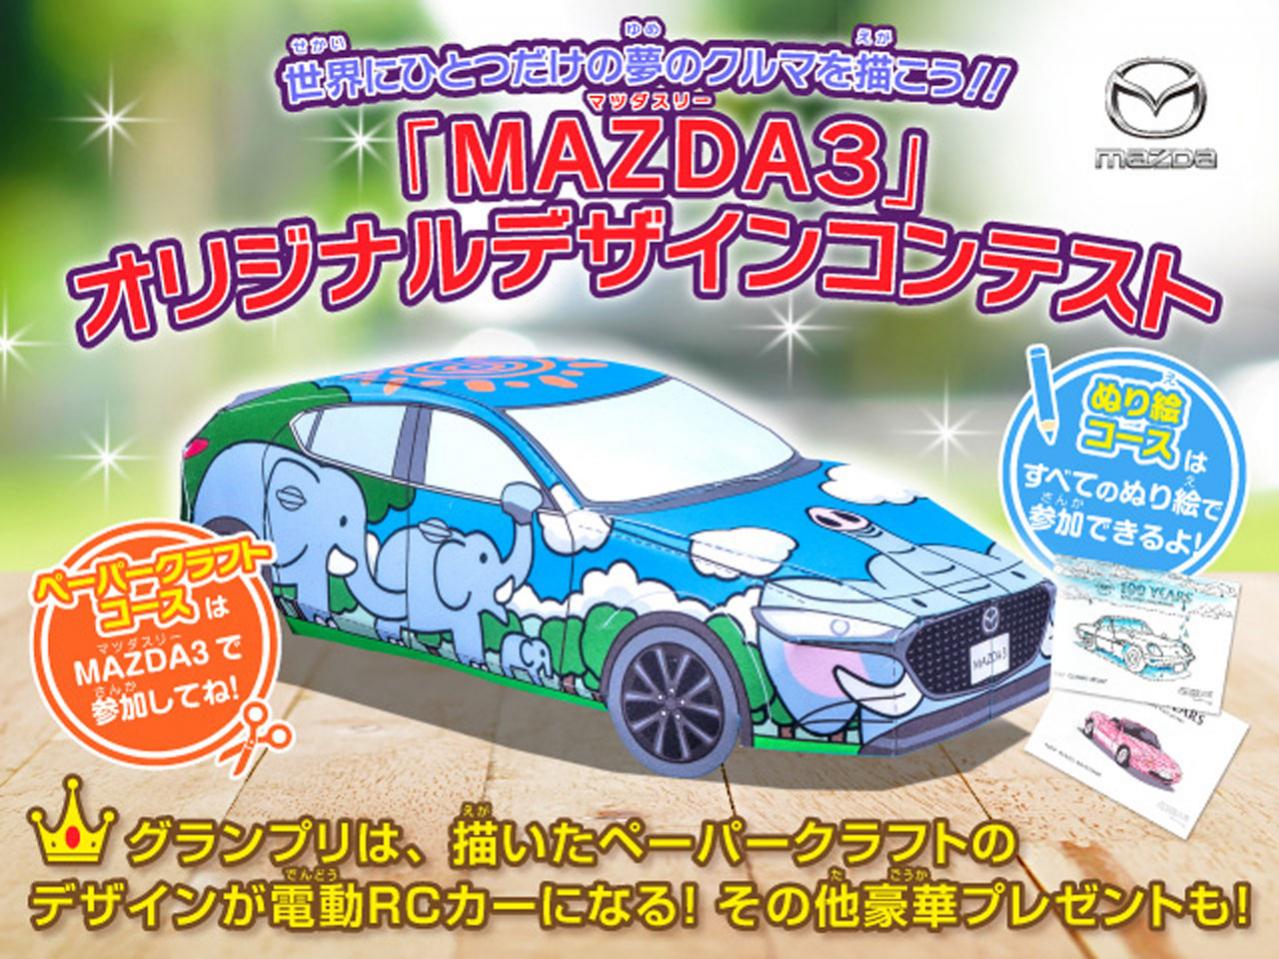 マツダがペーパークラフトとぬり絵で競う Mazda3オリジナルデザインコンテスト を開催 Motor Fan モーターファン